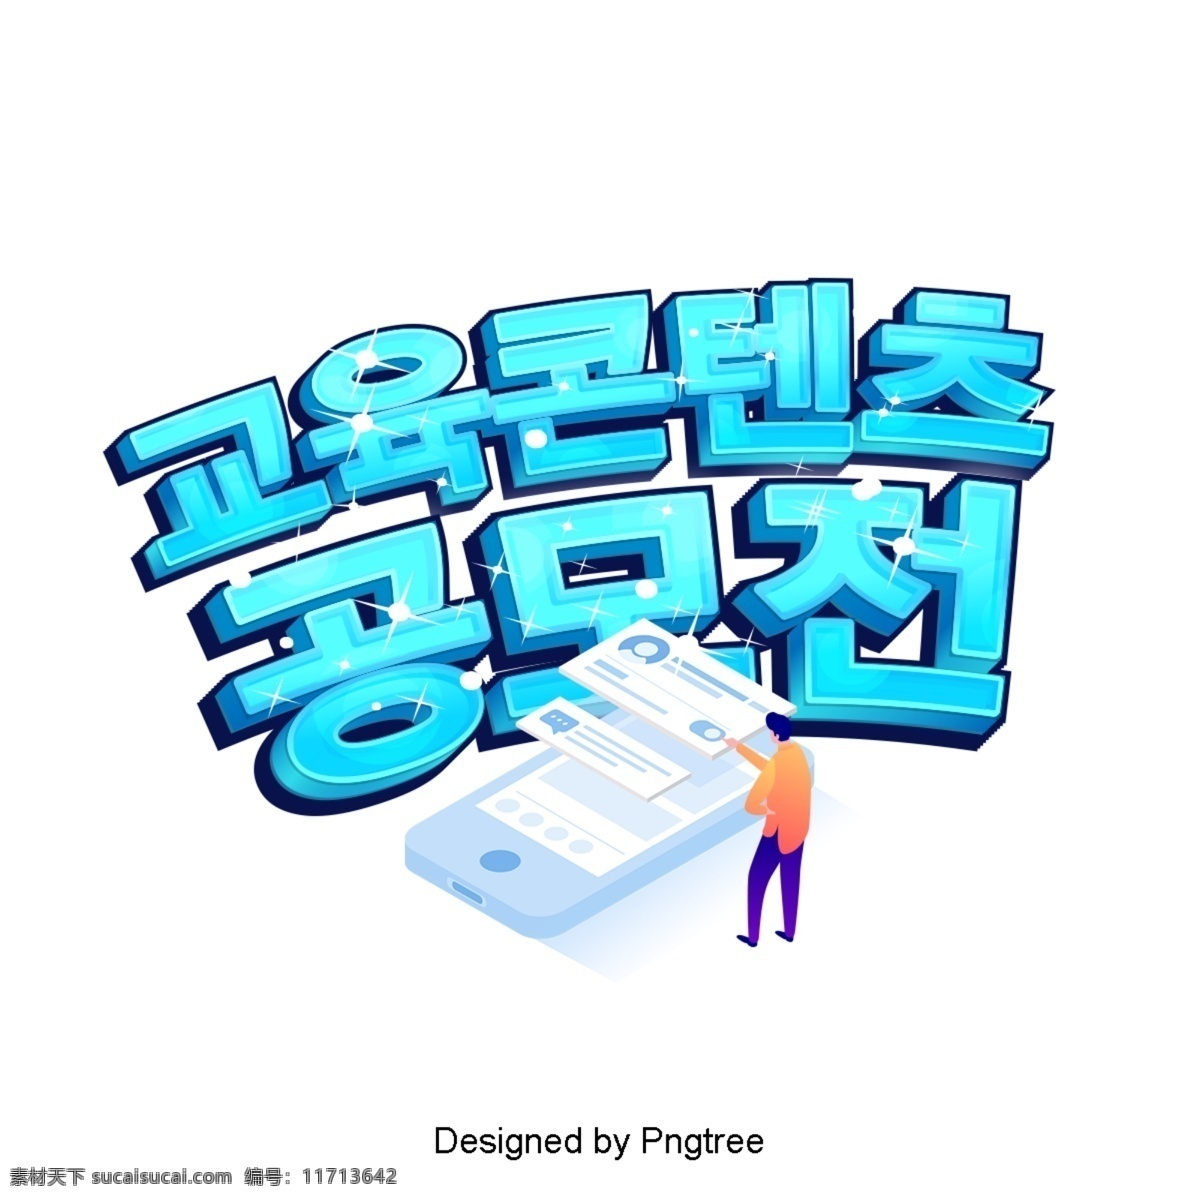 韩国 教育 内容 卡通 时尚界 数据 色彩艺术 ai材料 创作的 动画片 现场 可爱 字形 手机